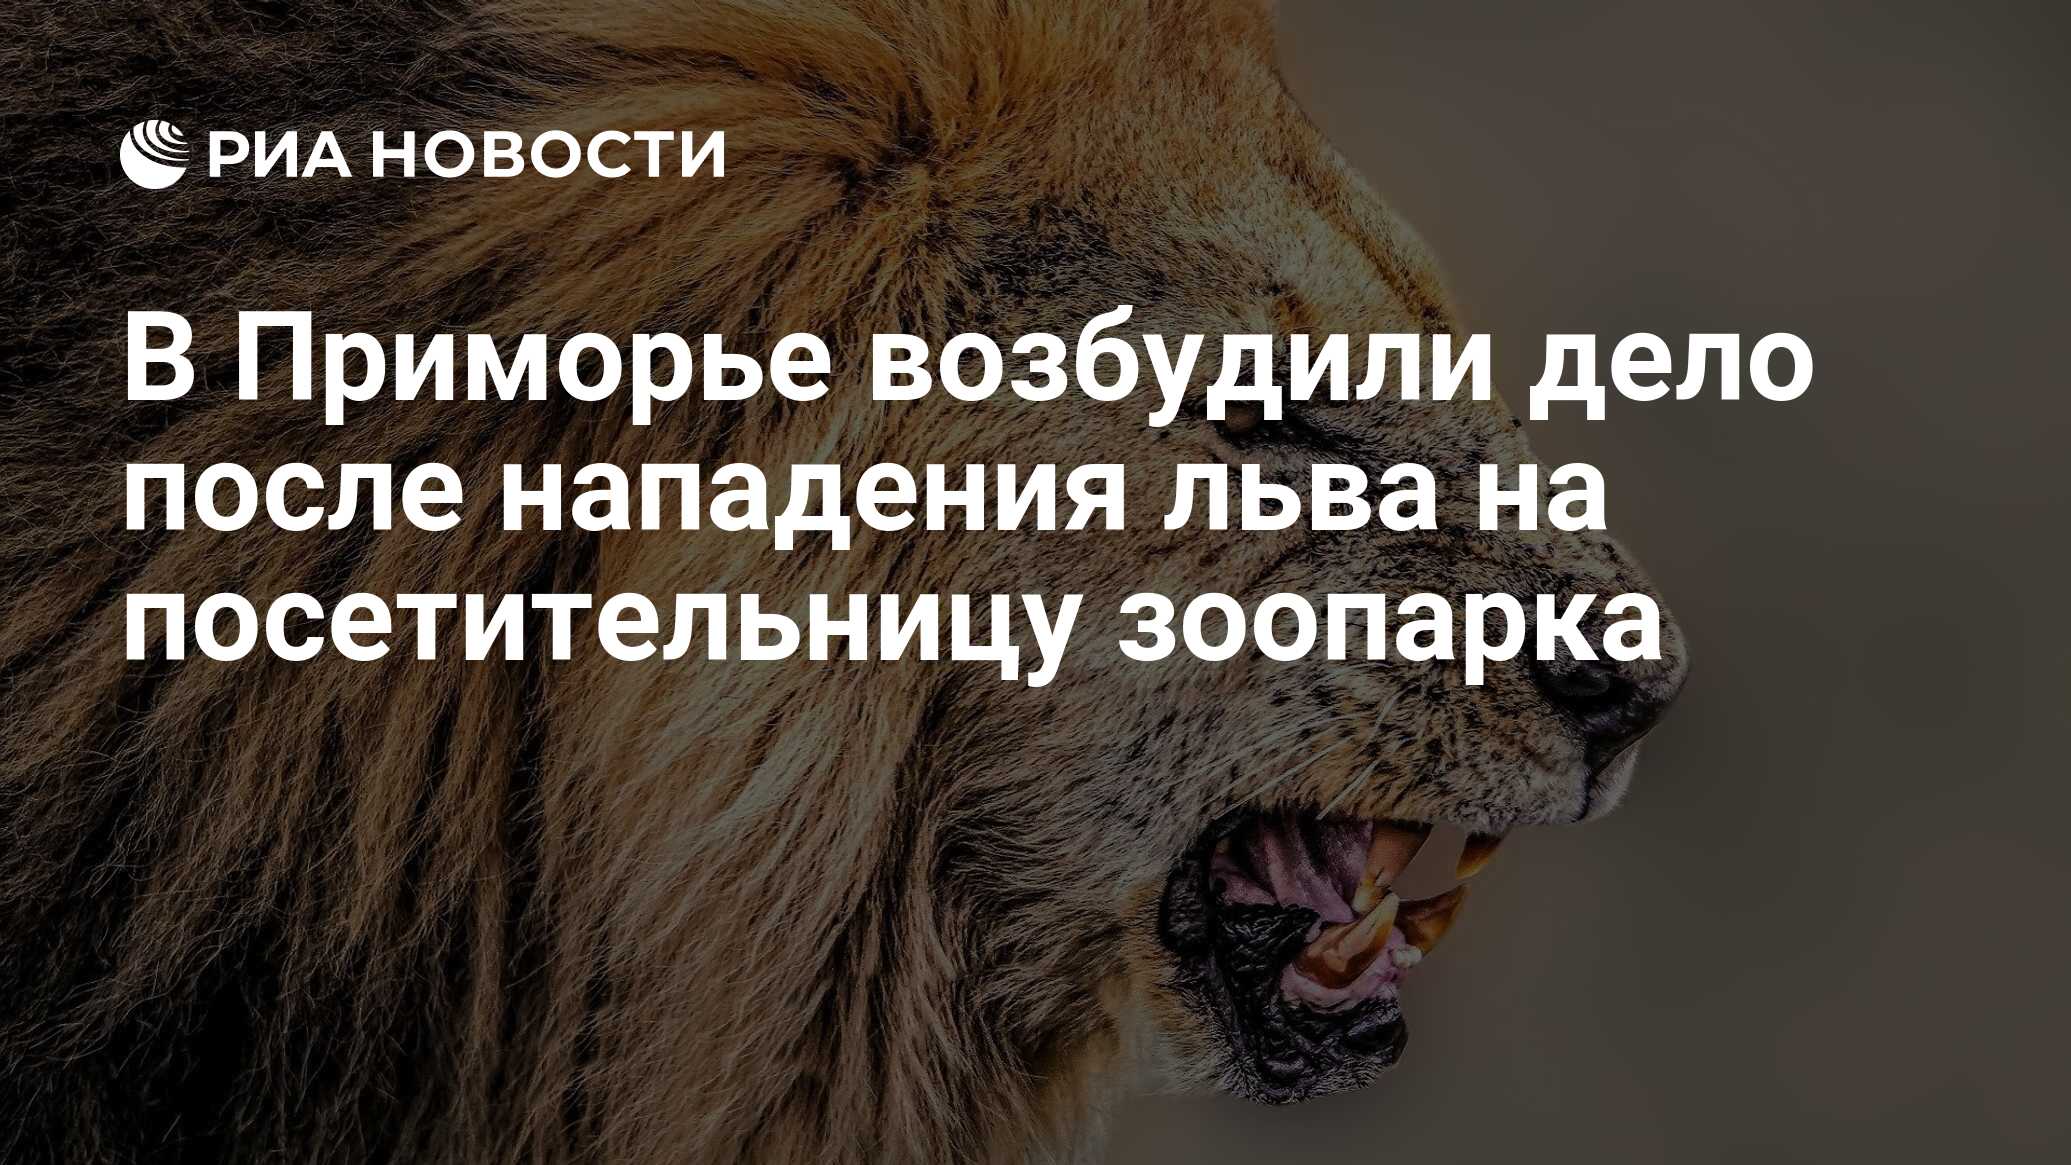 После нападения льва. Котенок нападает на Льва. Лев на первом месте. Лев в Московском зоопарке ограда. В Приморье в зоопарке Лев напал на женщину.